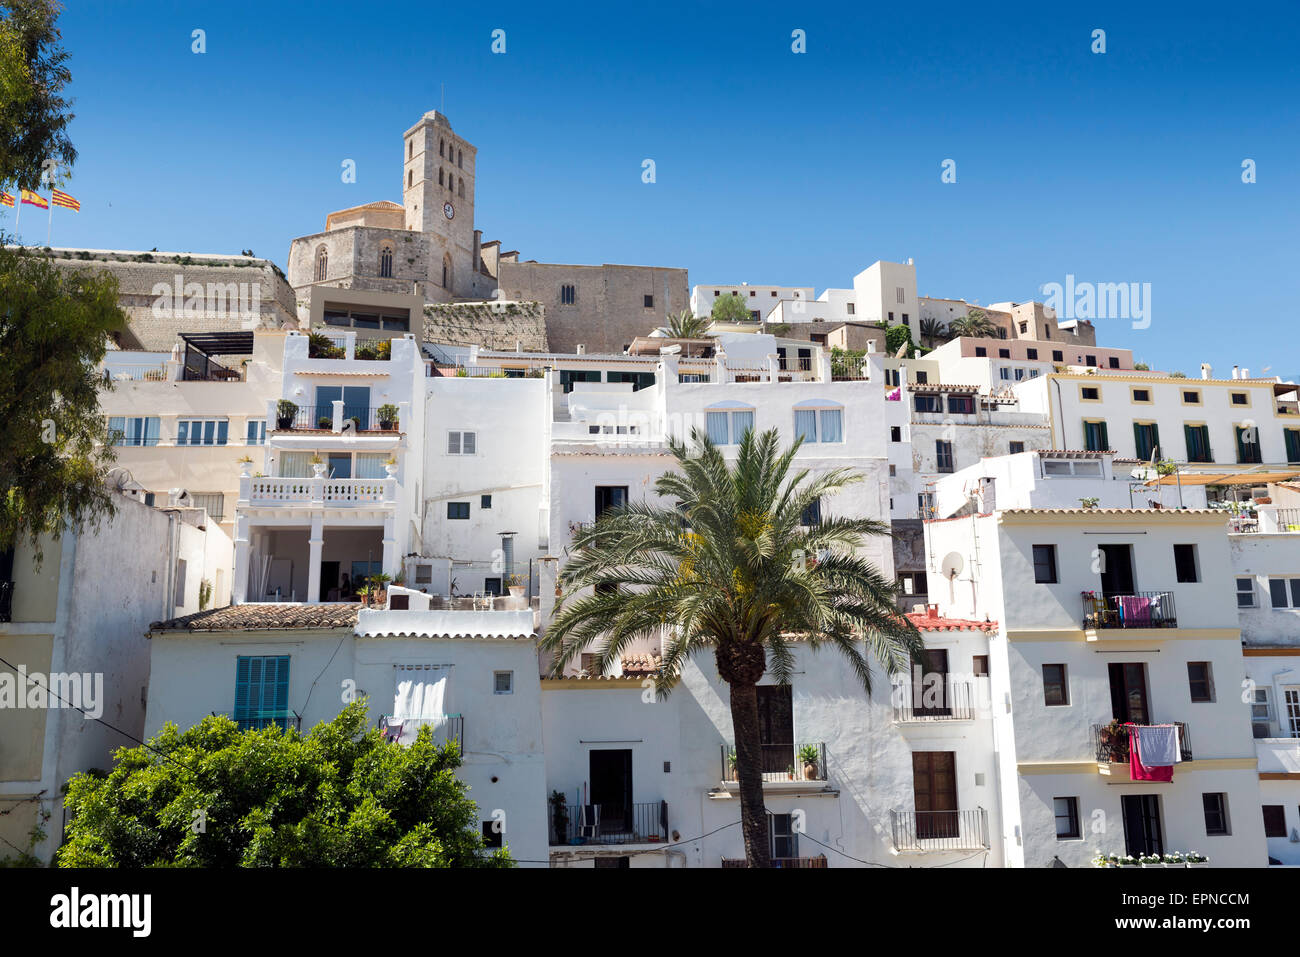 La cattedrale e la città vecchia. Ibiza, Isole Baleari. Spagna Foto Stock